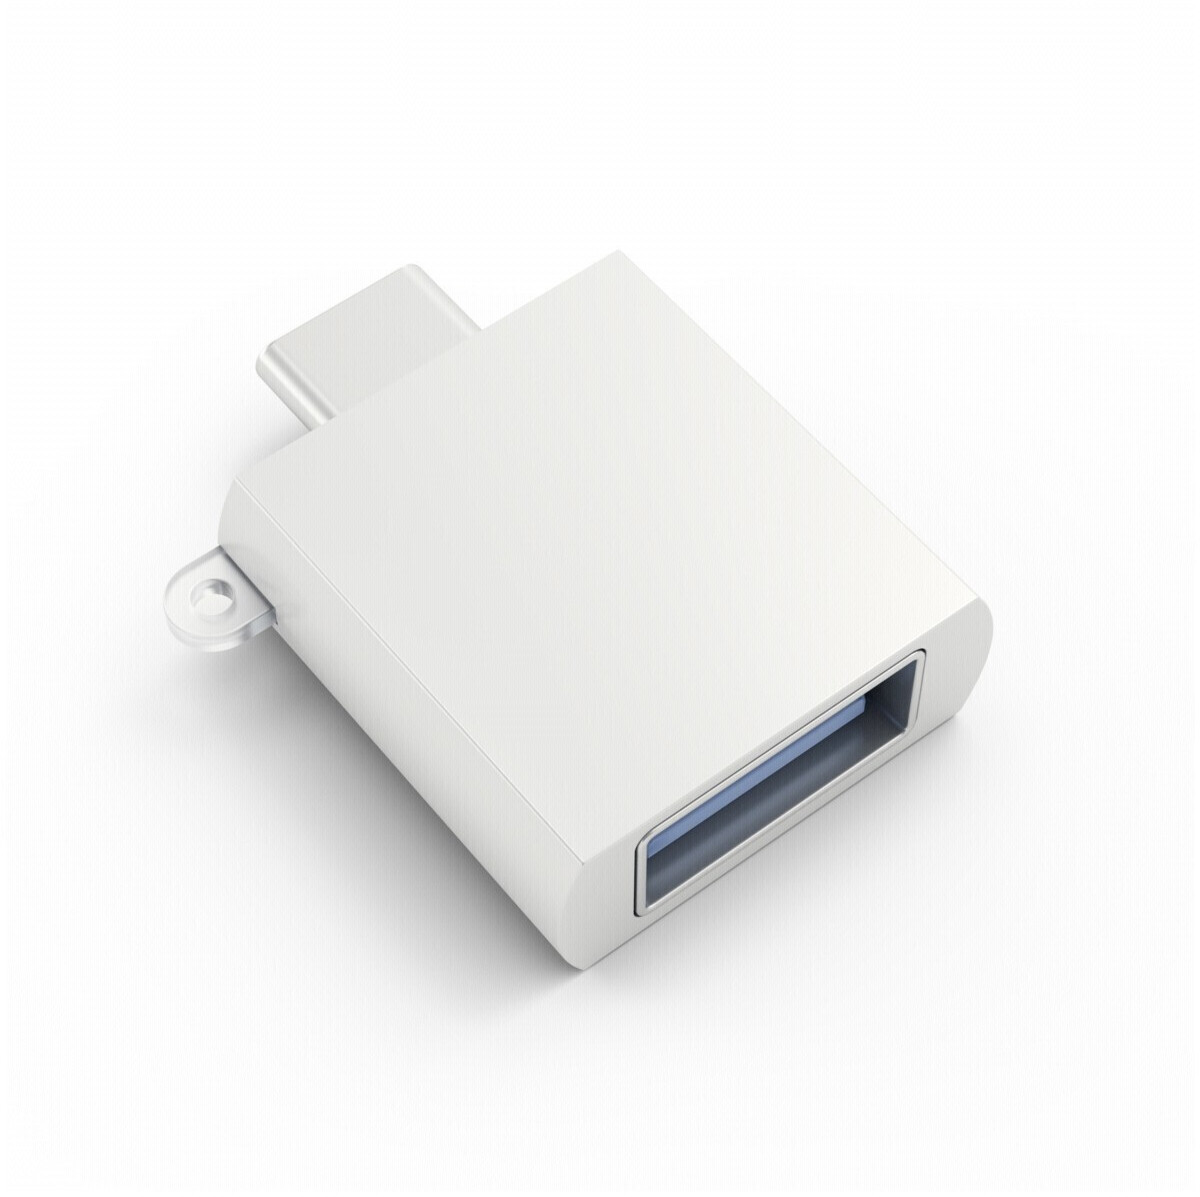 InLine Câble adaptateur USB 2.0 carte mère vers 3.0 interne 0,15 m (33449I)  au meilleur prix sur